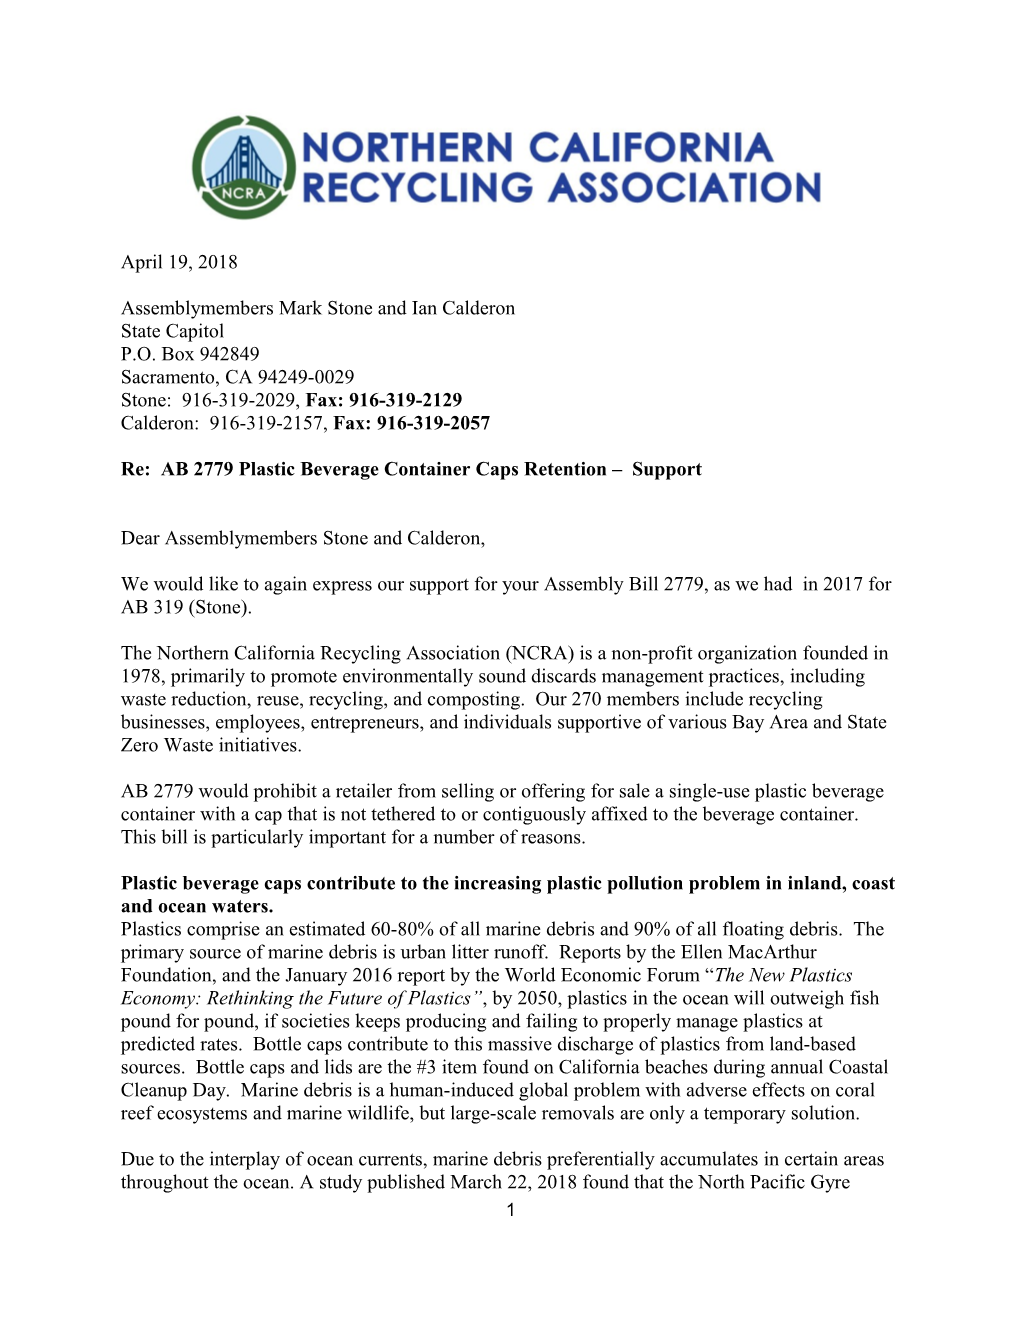 Re: AB 2779 Plastic Beverage Container Caps Retention Support